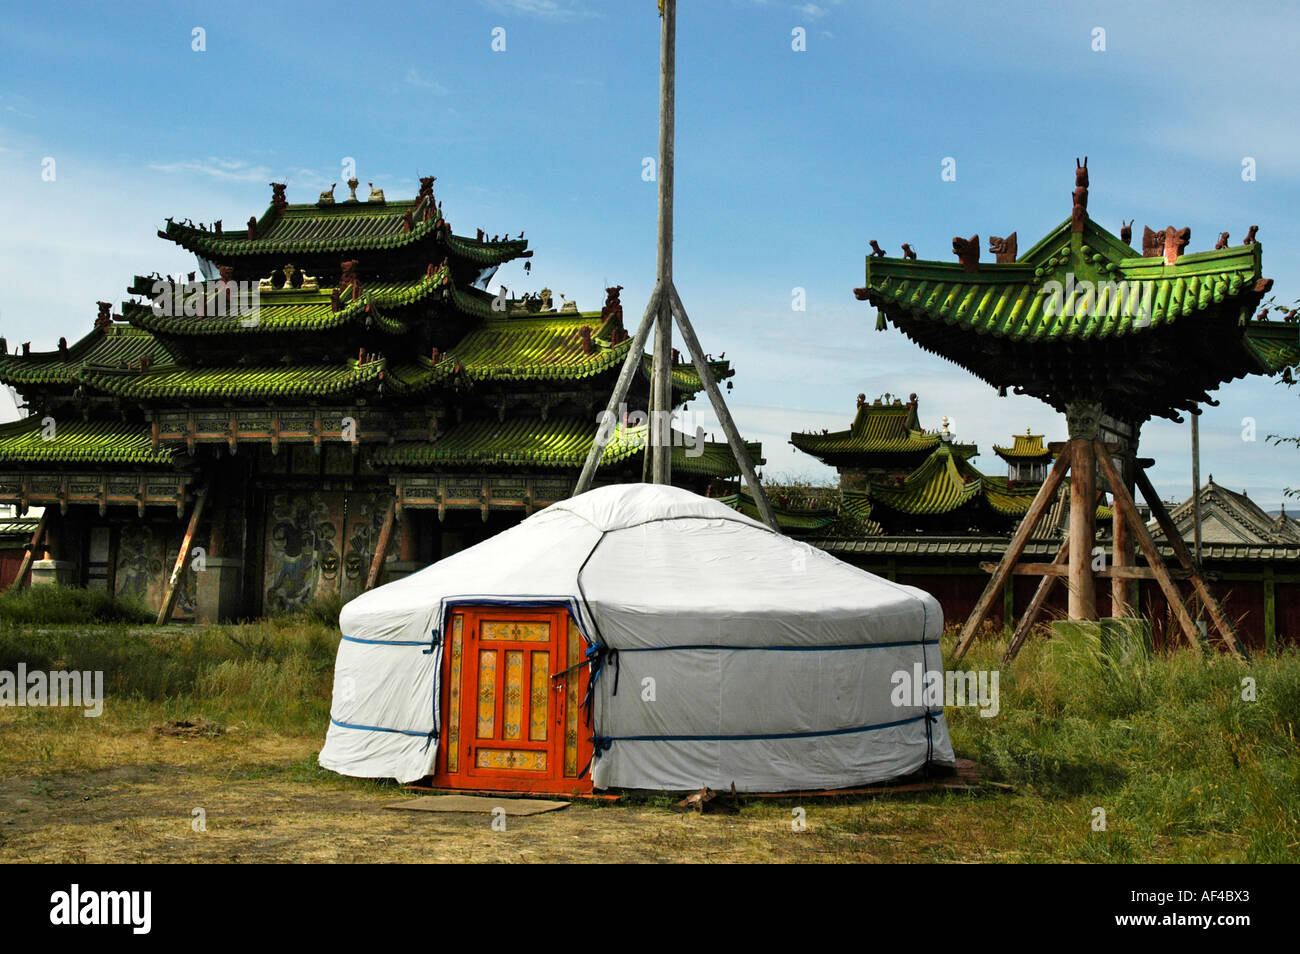 Yurte ger en face de temples bouddhistes au palais d'hiver Mongolie Oulan-bator Banque D'Images